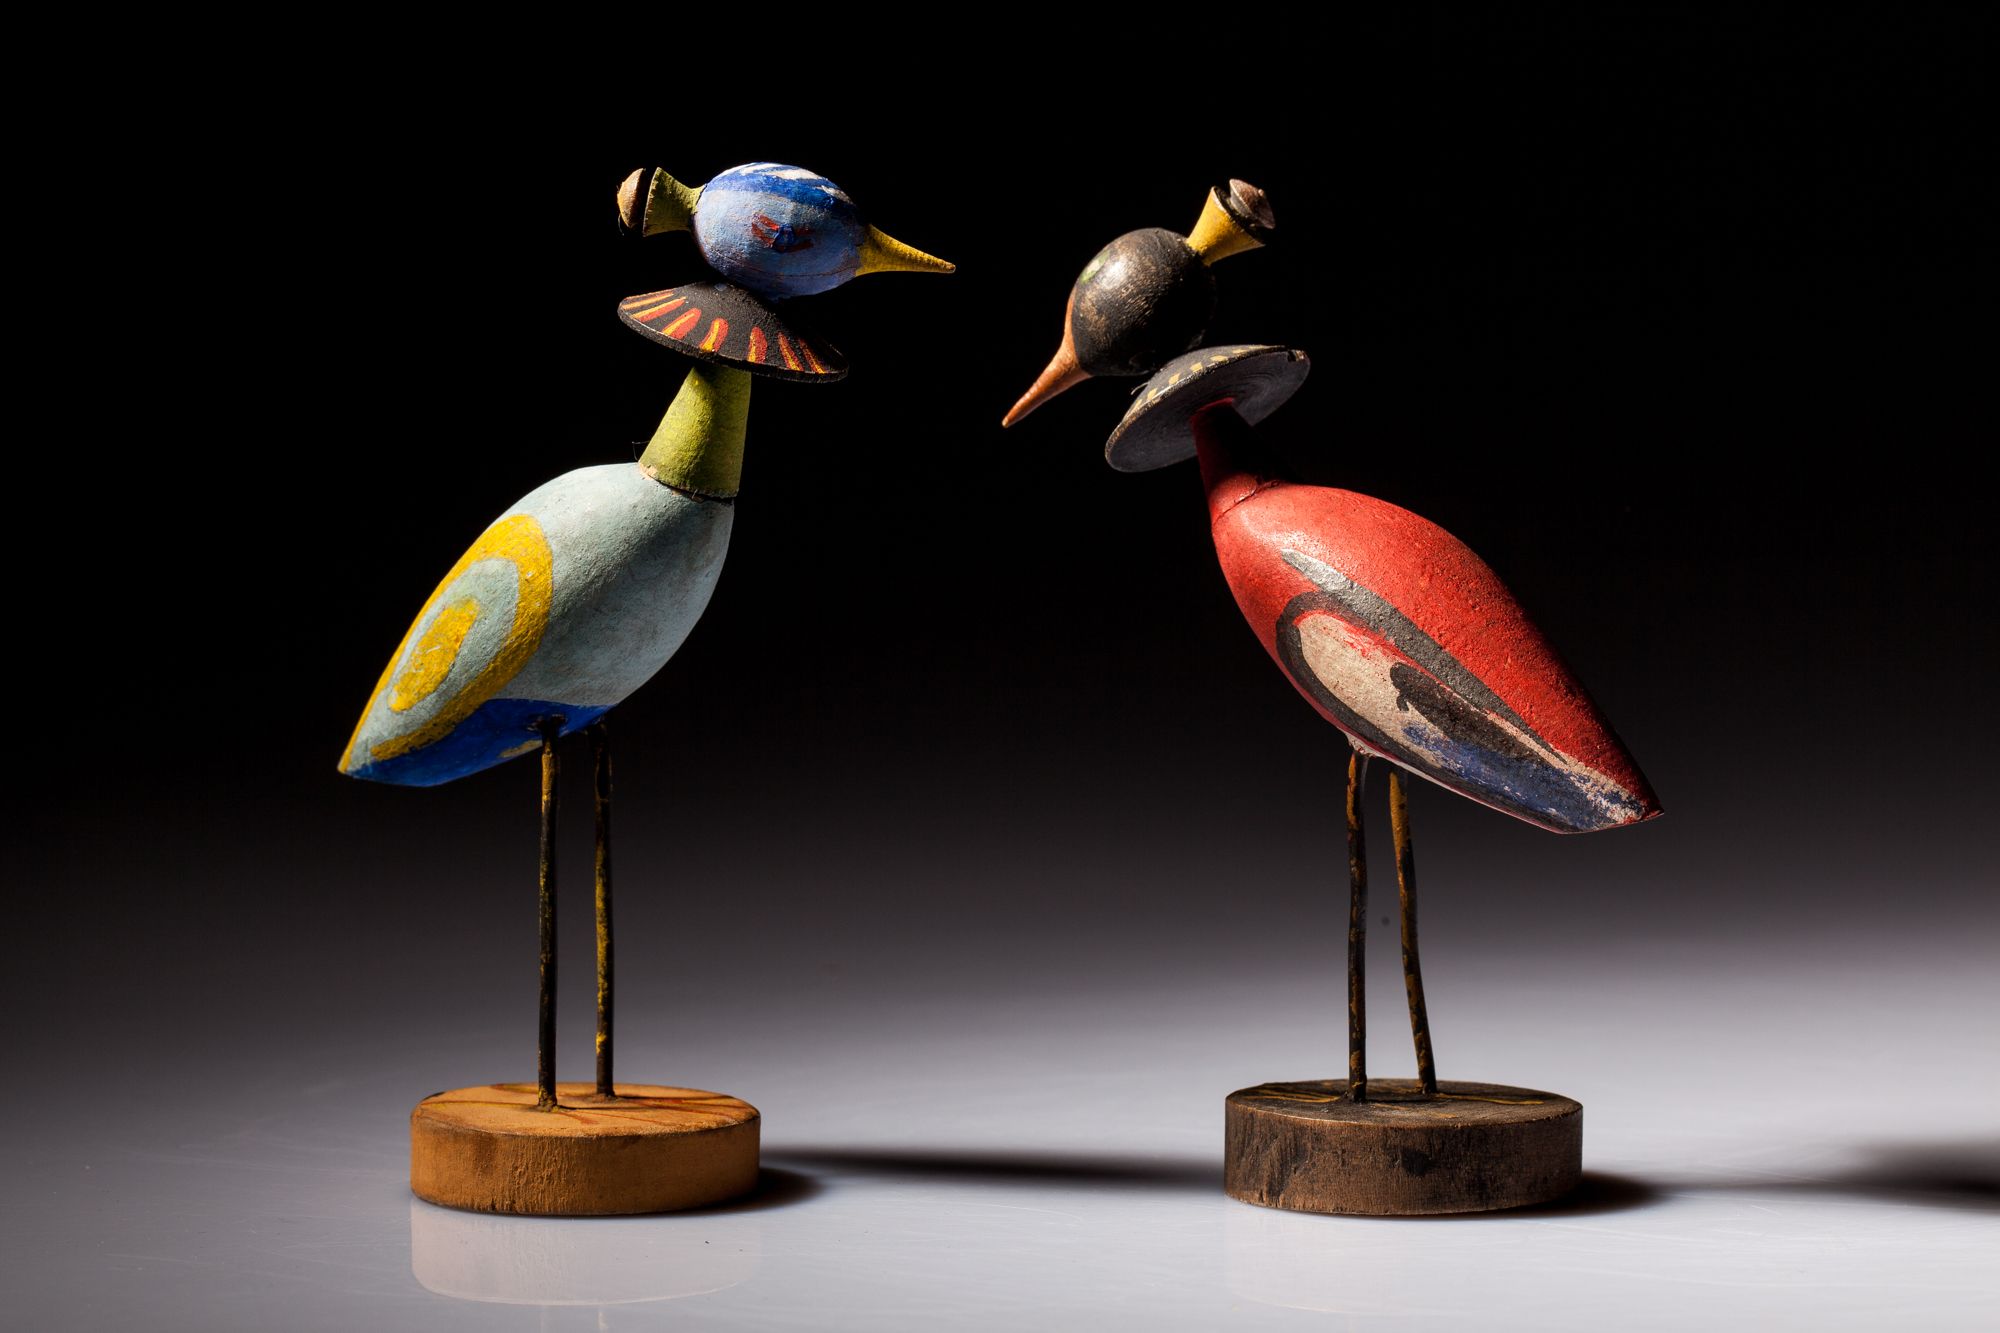 Zabawki-ptaki według projektu Zofii Stryjeńskiej dla Warszatów Krakowskich, źródło: Muzeum Etnograficzne w Krakowie